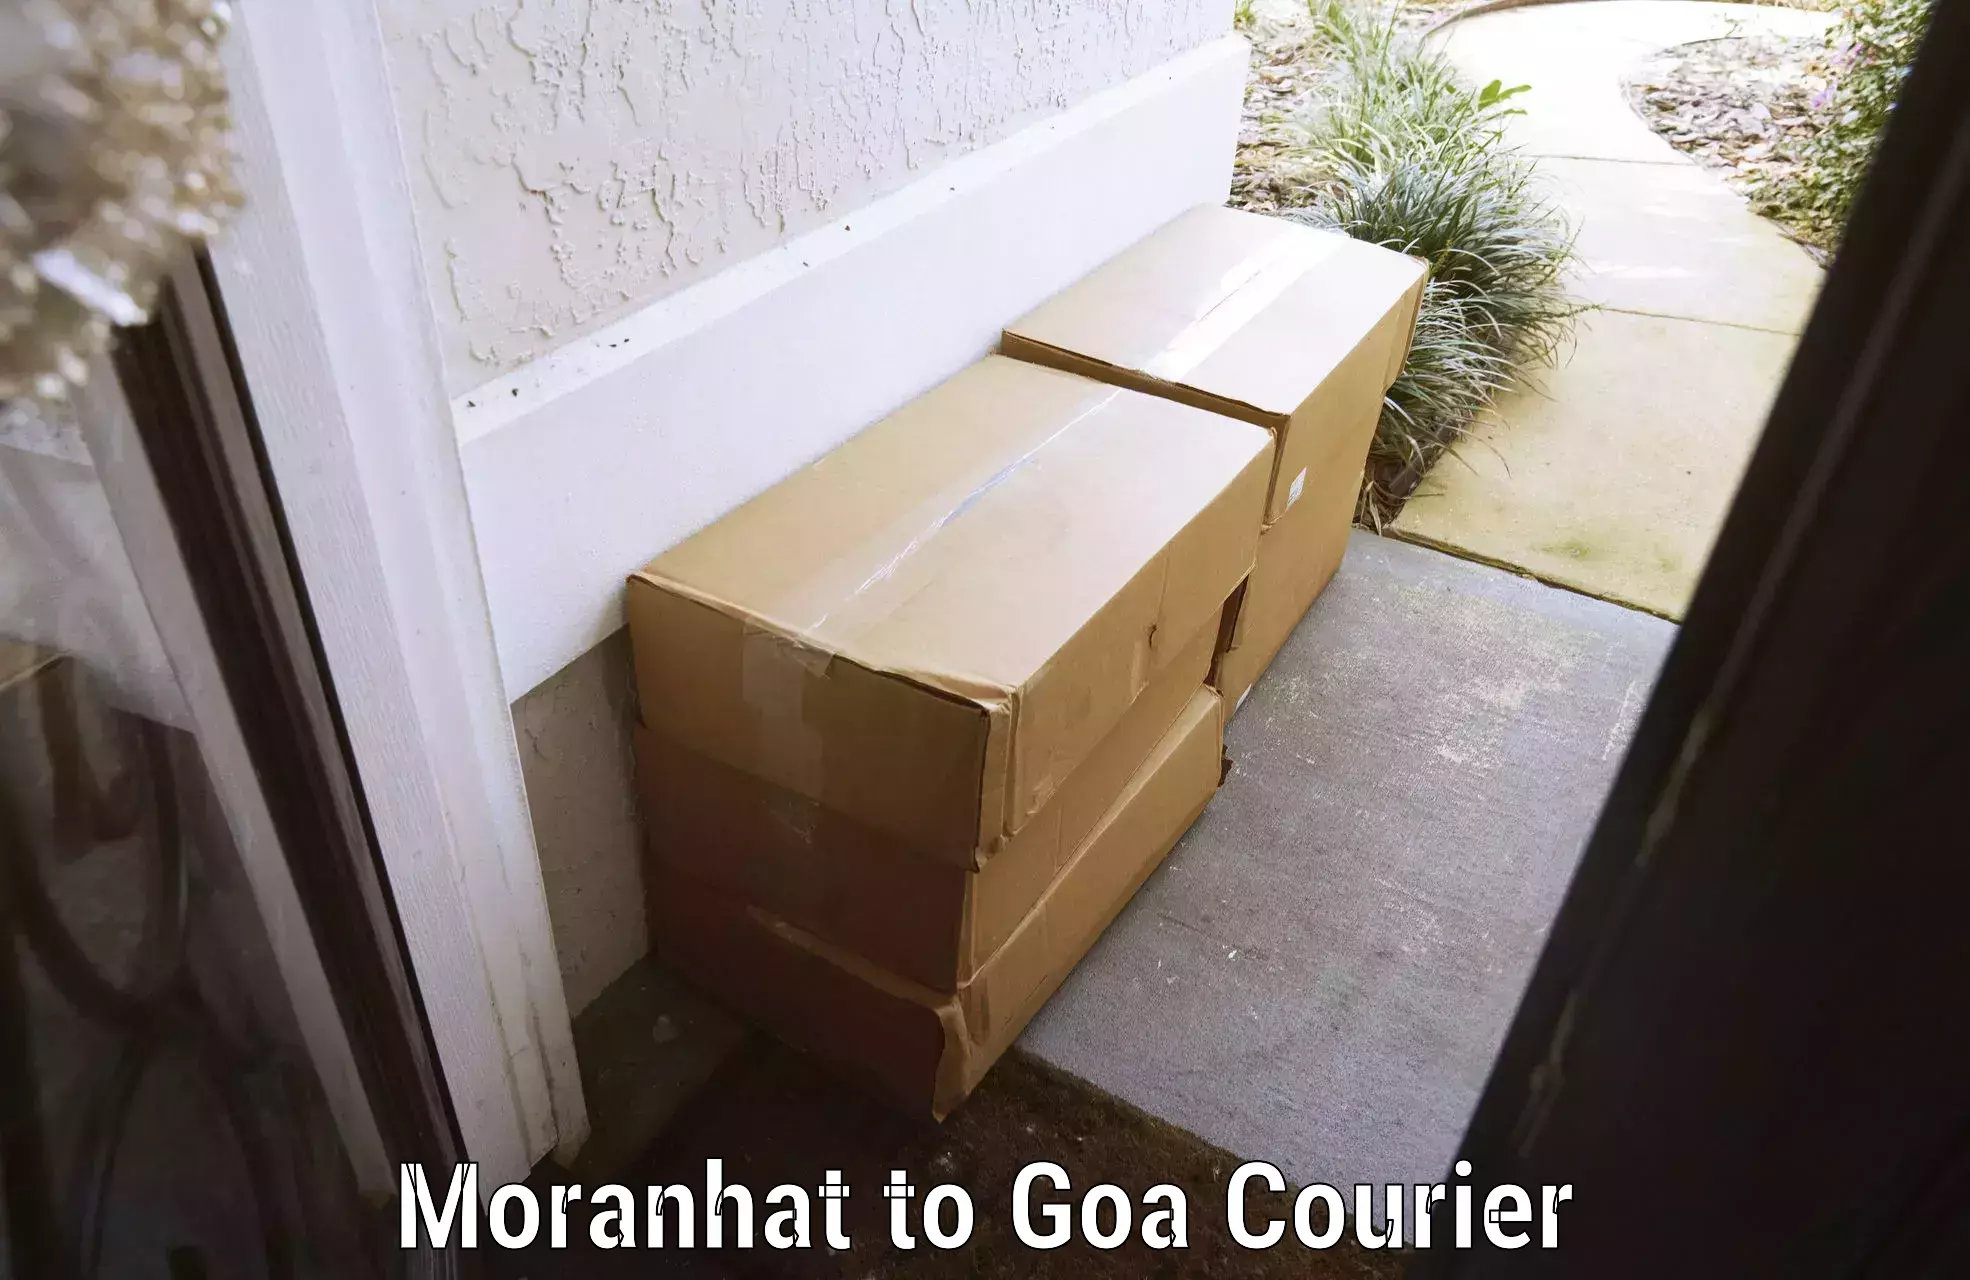 Door-to-door baggage service Moranhat to Goa